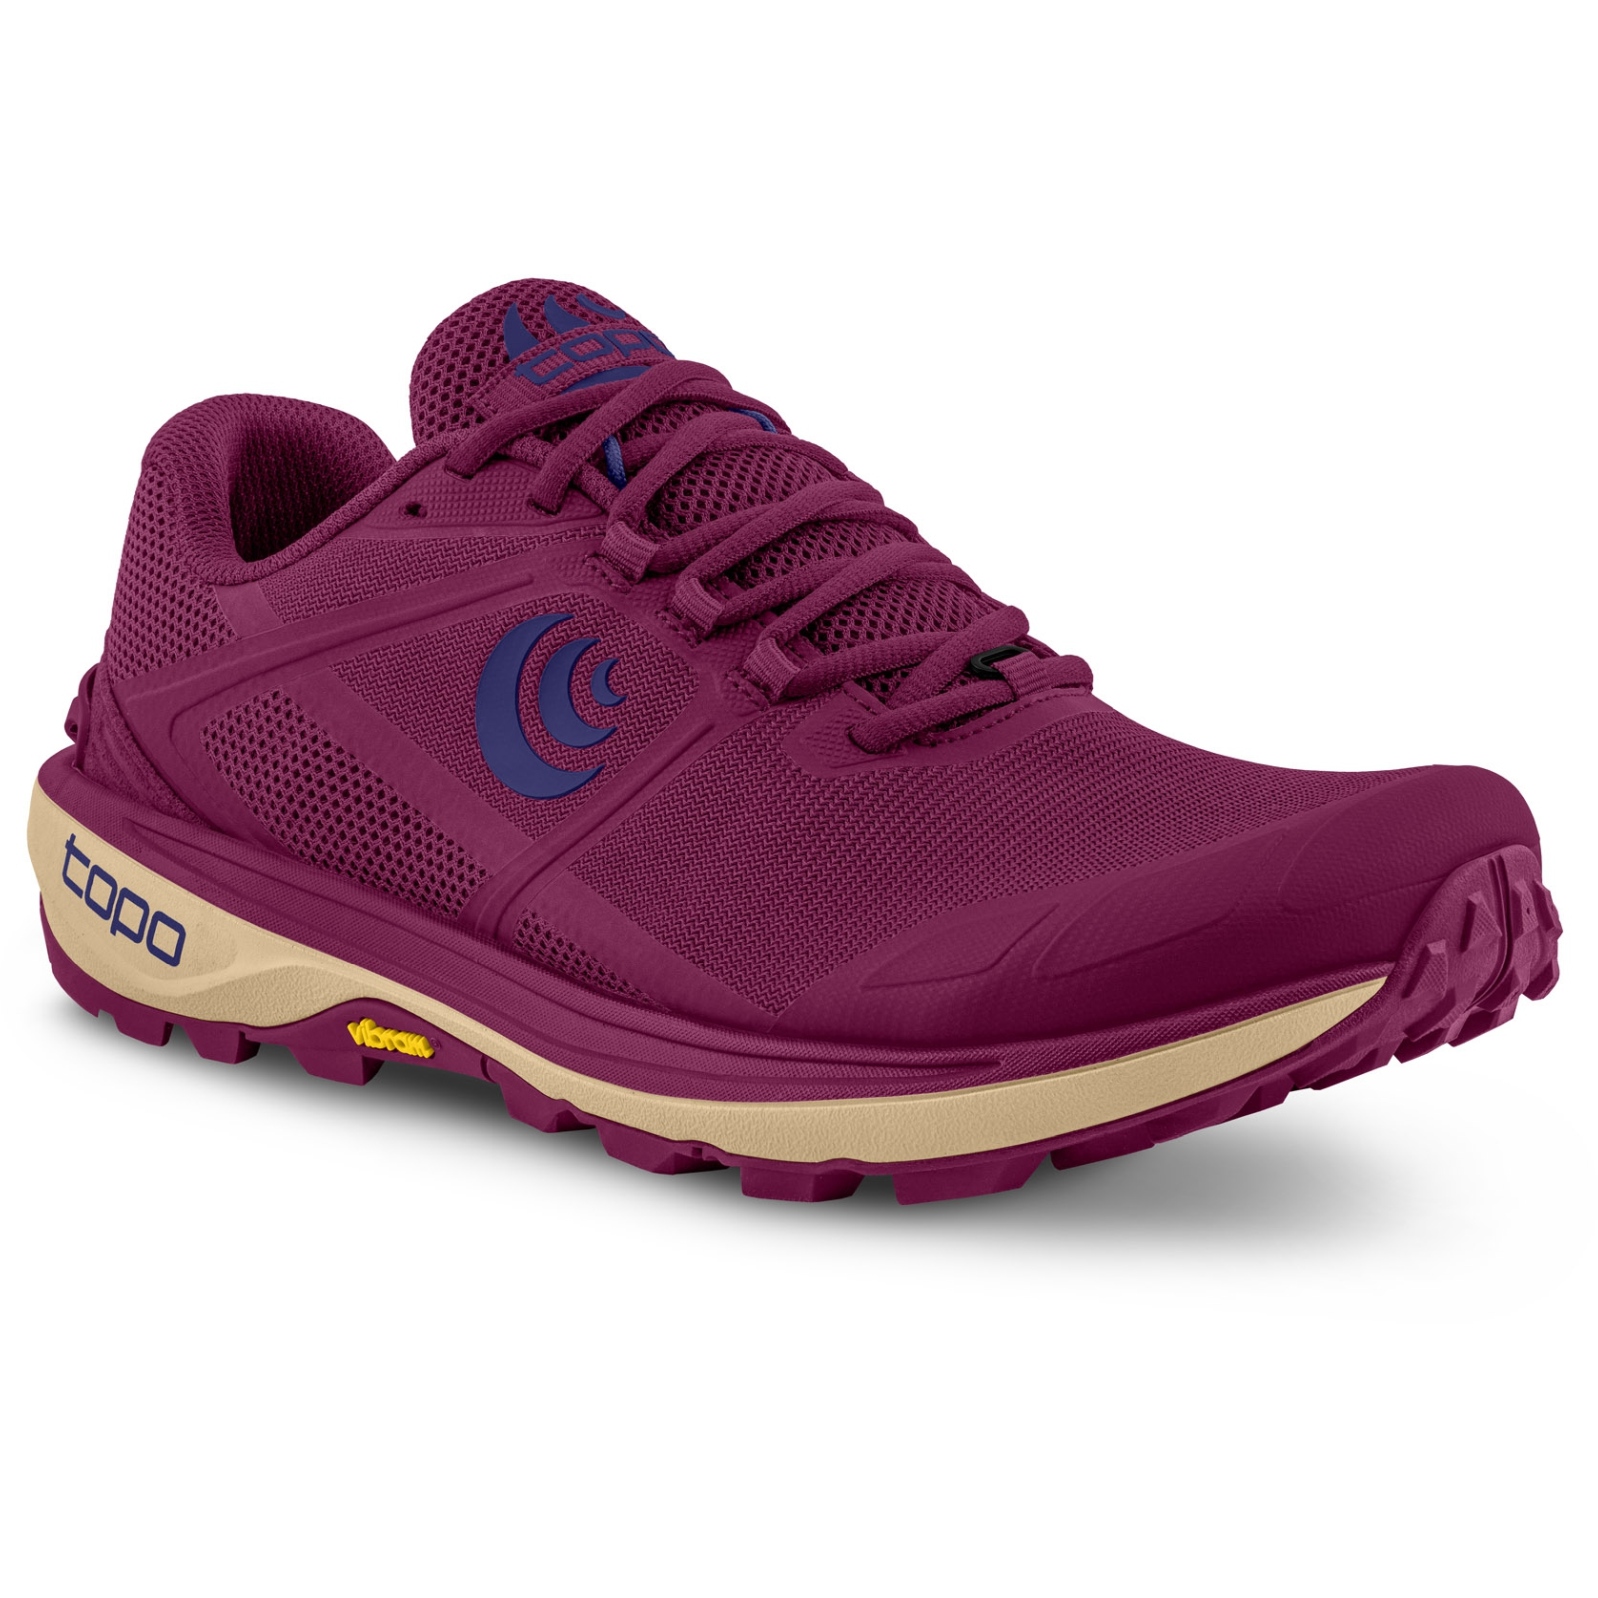 Productfoto van Topo Athletic Terraventure 4 Dames Trailrunning Schoenen - berry/violet